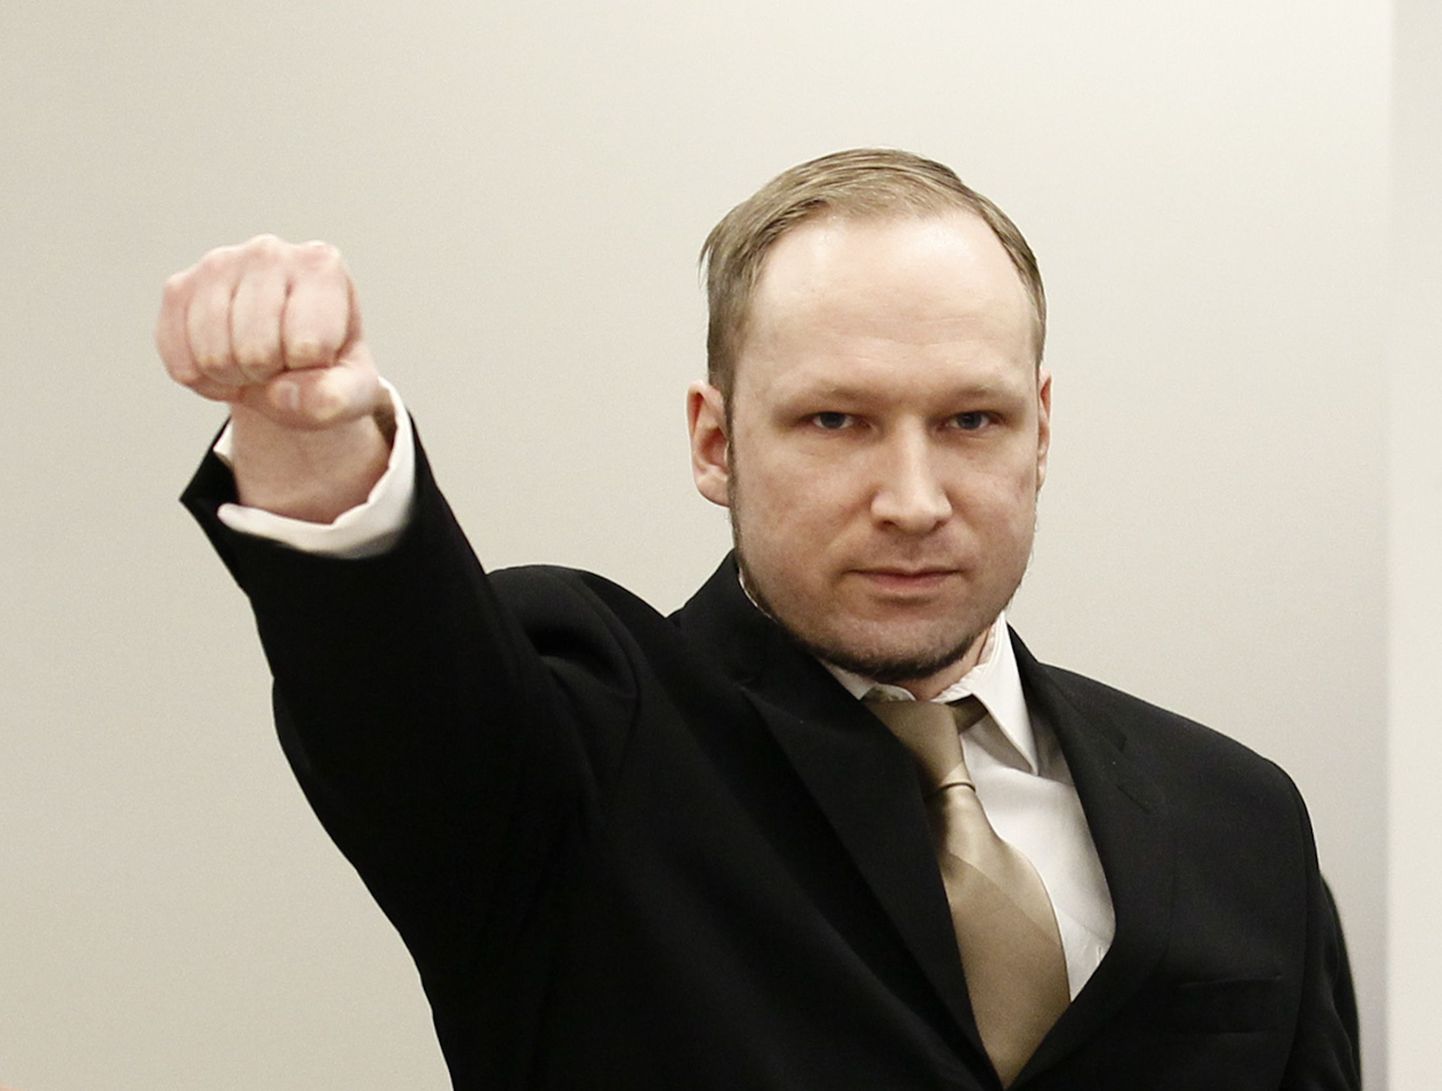 Anders Behring Breivik